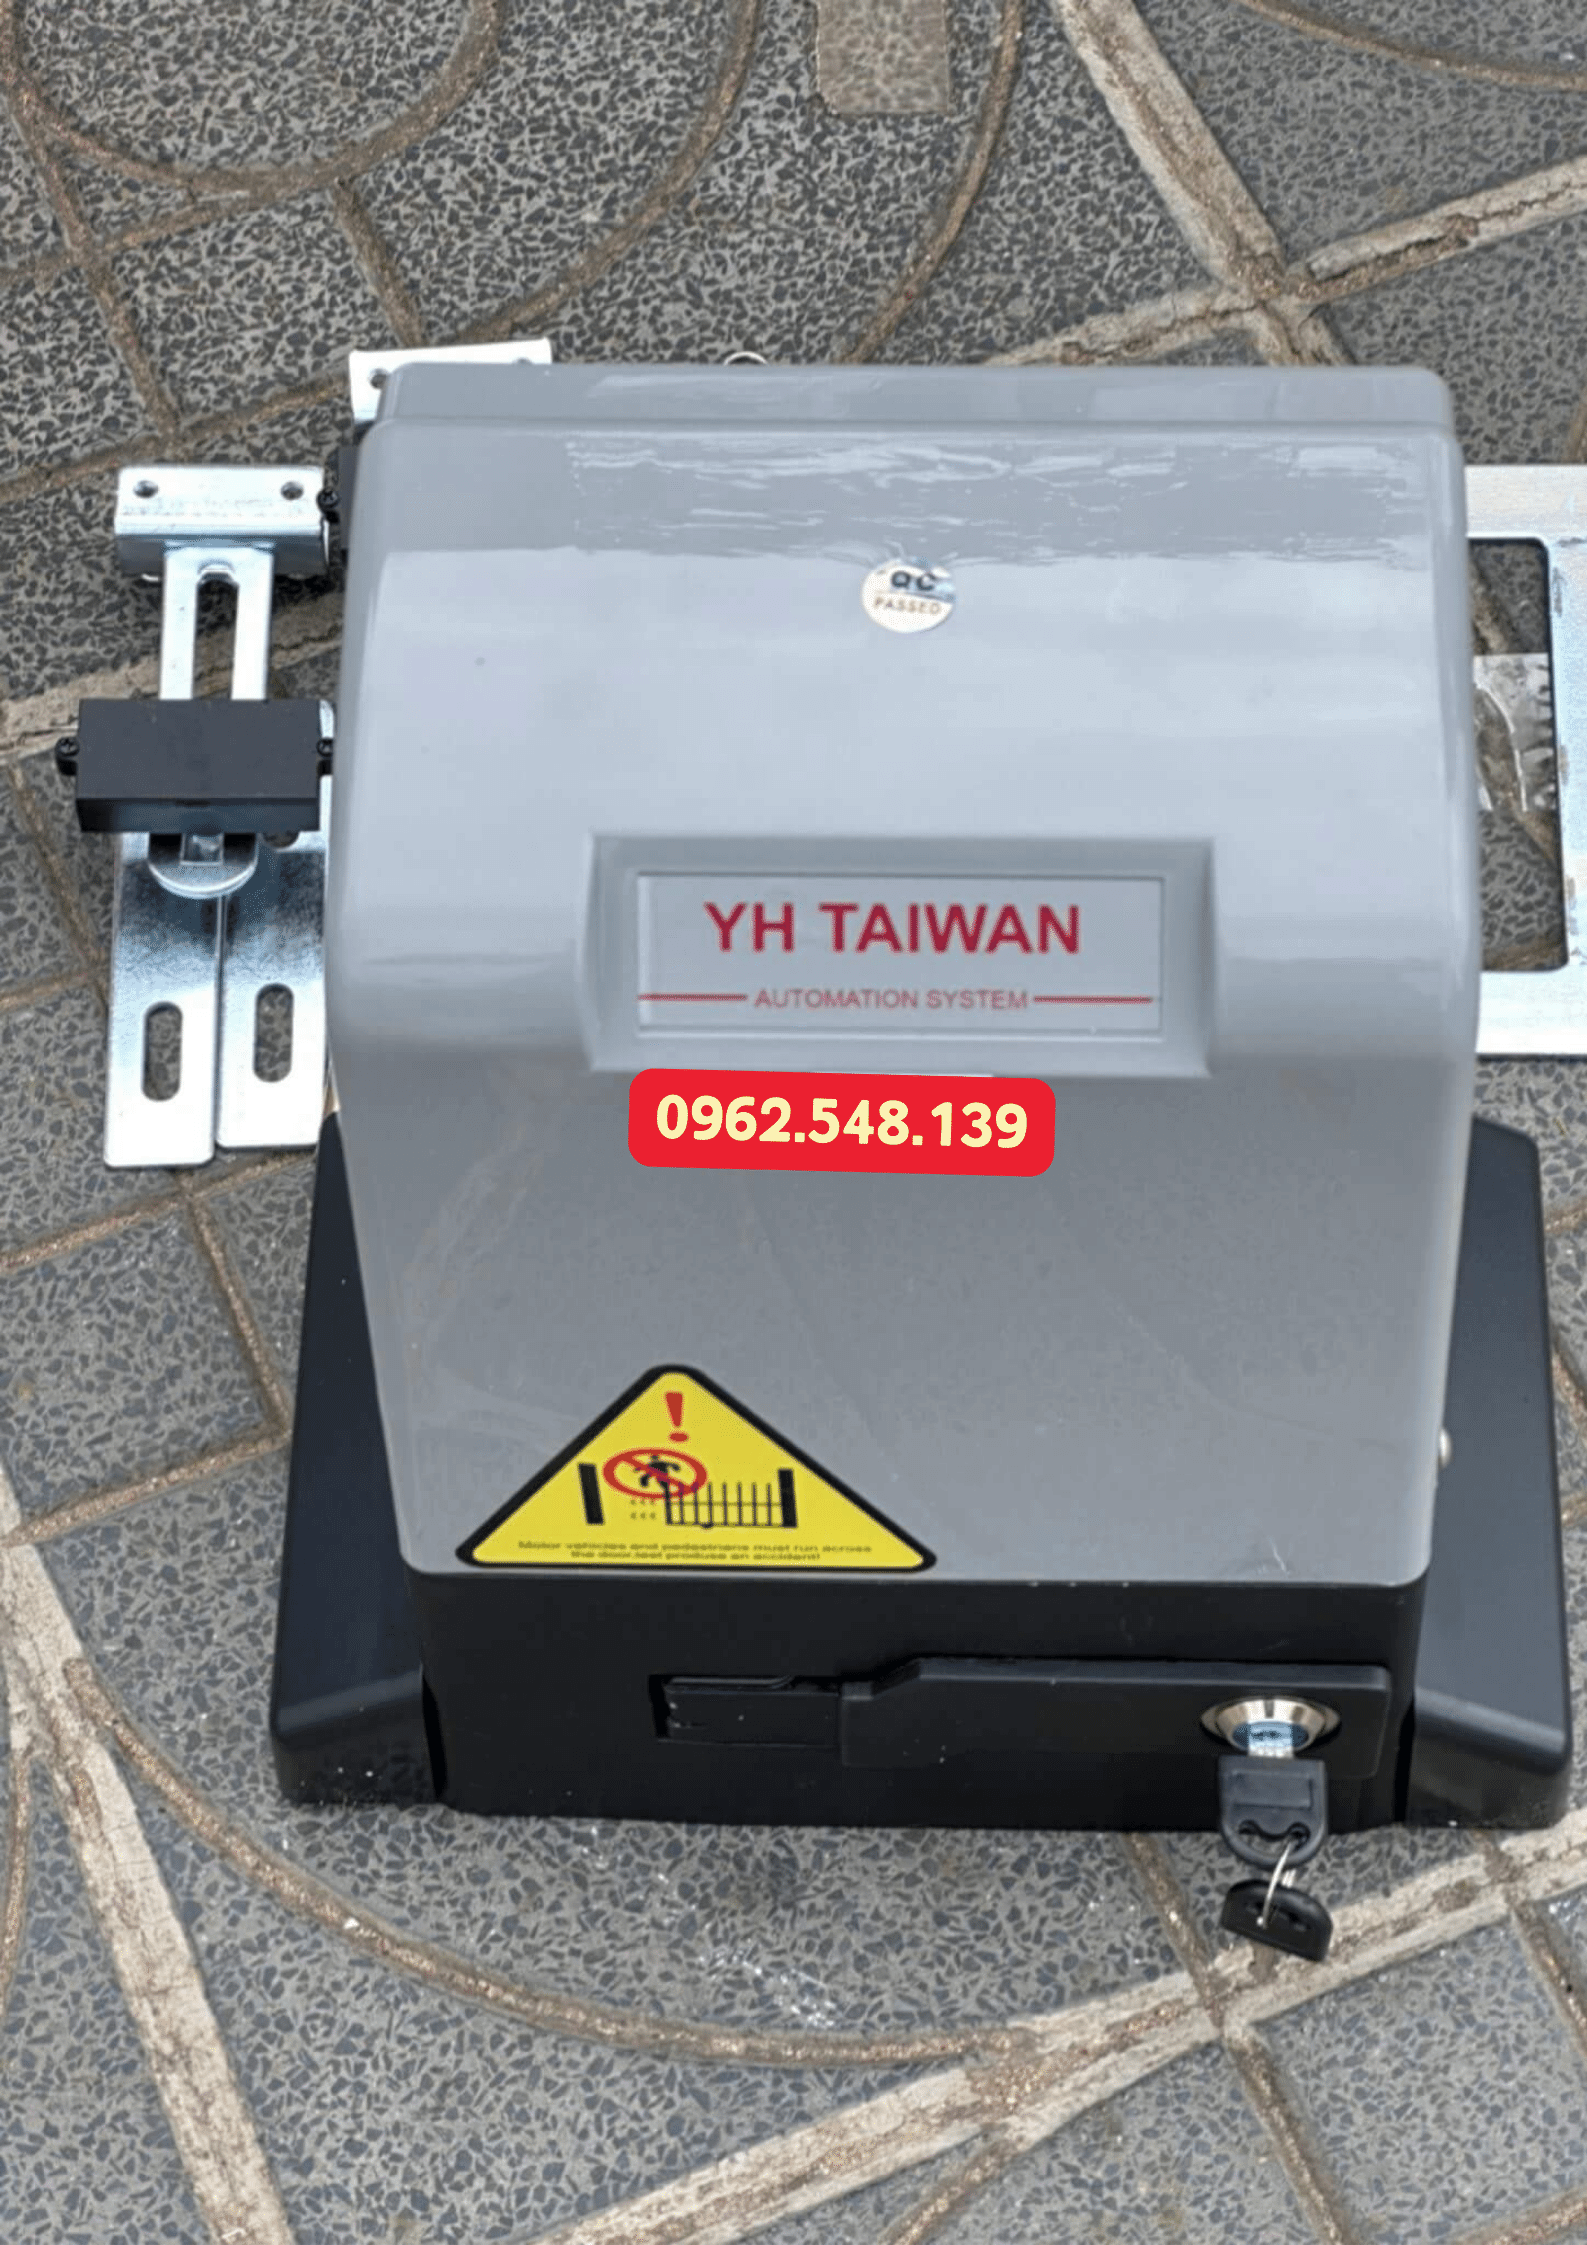 YH taiwan được xem là một trong các thương hiệu motor cổng chất lượng giá rẻ được yêu thích tại Việt Nam